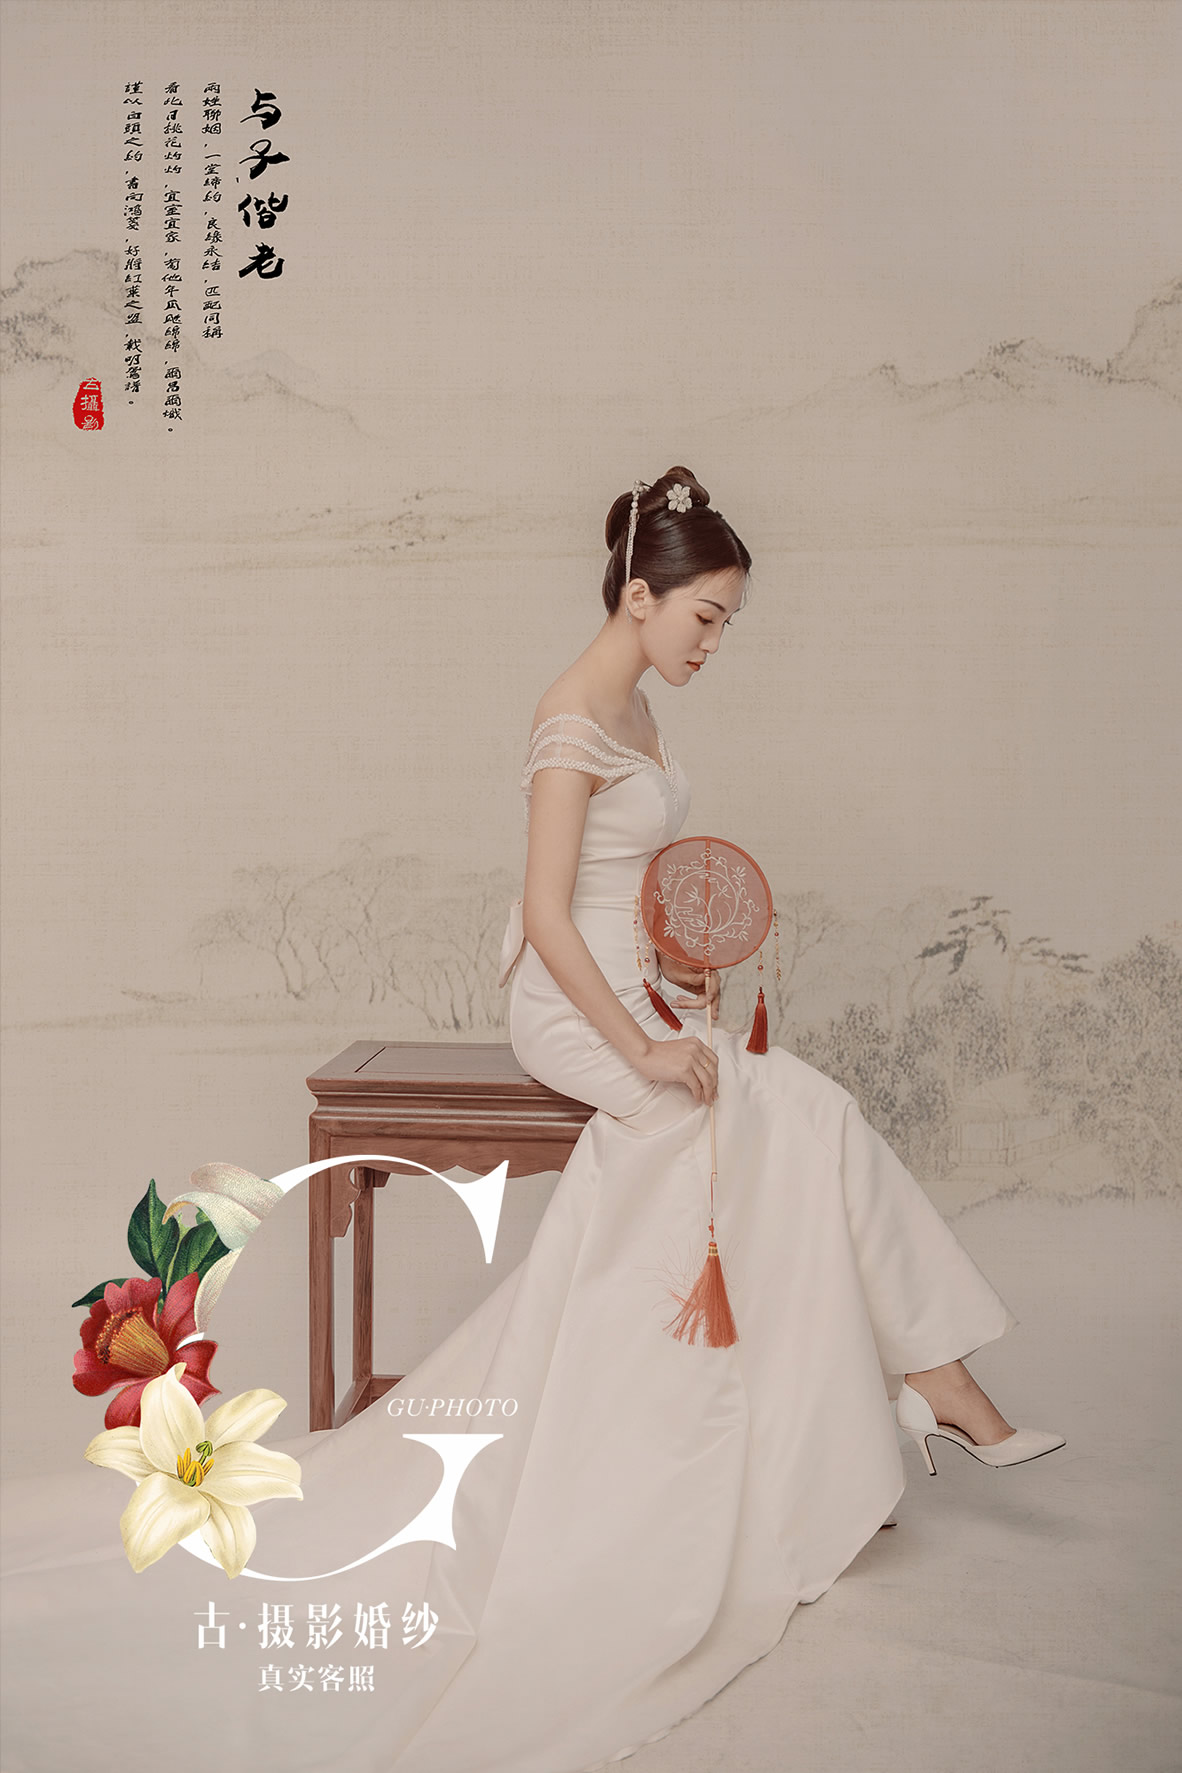 谭先生 刘小姐 - 每日客照 - 古摄影婚纱艺术-古摄影成都婚纱摄影艺术摄影网